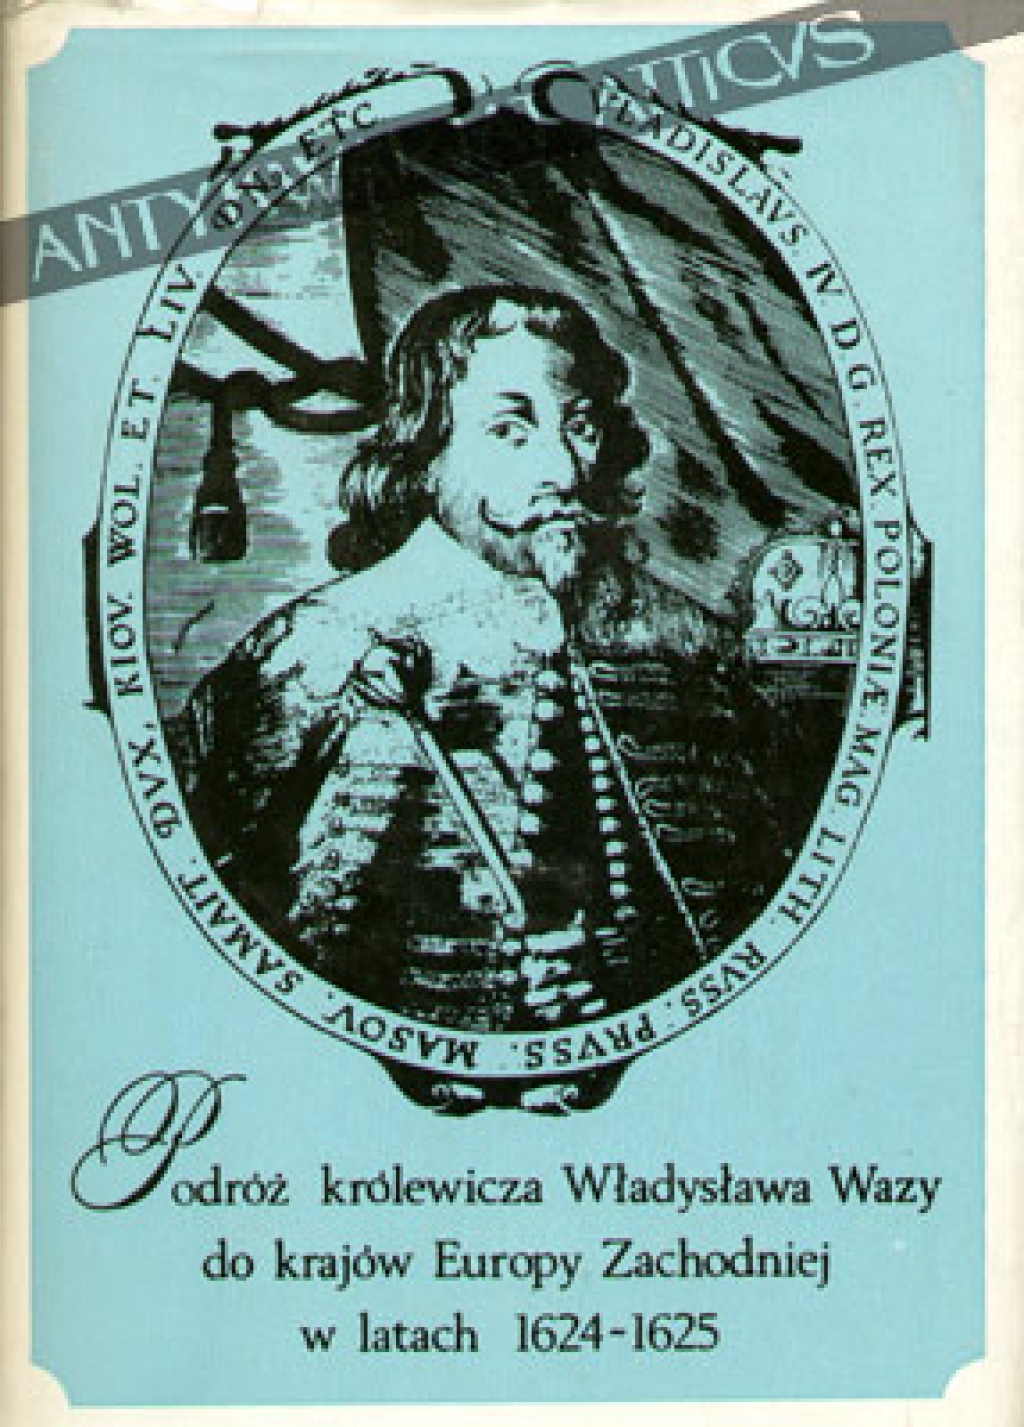 Podróż królewicza Władysława Wazy do krajów Europy Zachodniej w latach 1624-1625 w świetle ówczesnych relacji